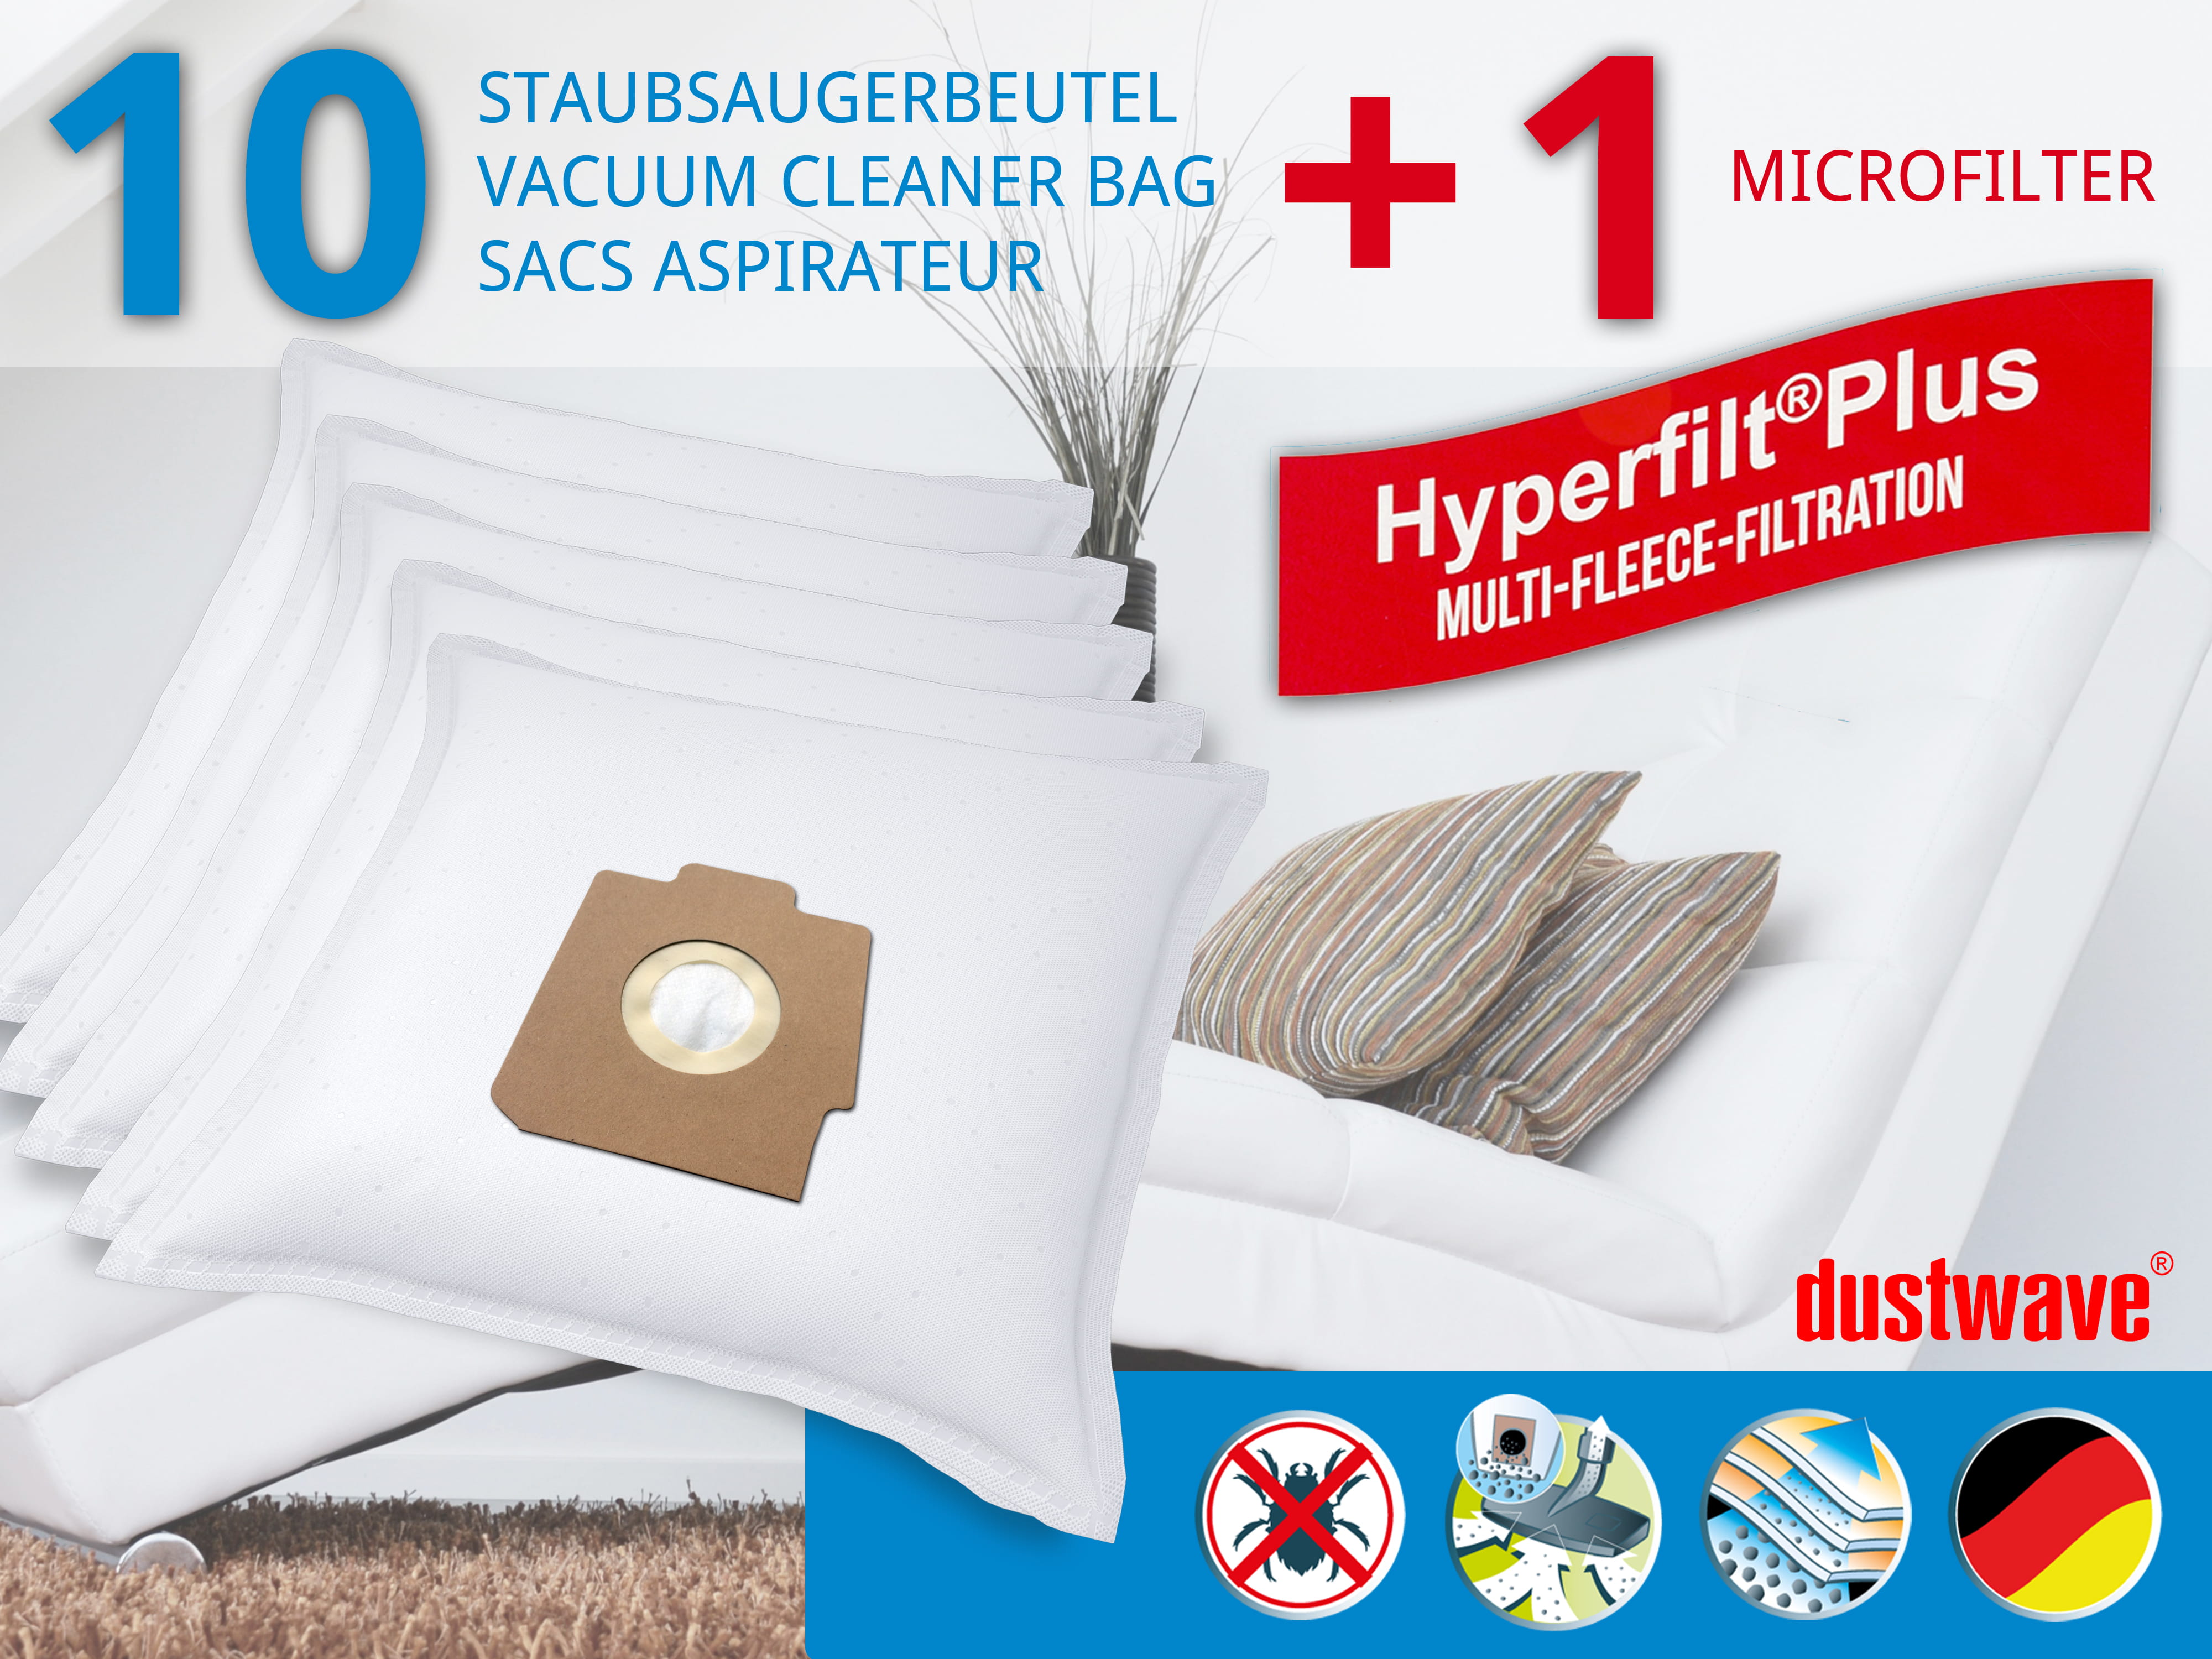 Dustwave® 10 Staubsaugerbeutel für Hoover SC250... / TRSC250 Alpina - hocheffizient, mehrlagiges Mikrovlies mit Hygieneverschluss - Made in Germany